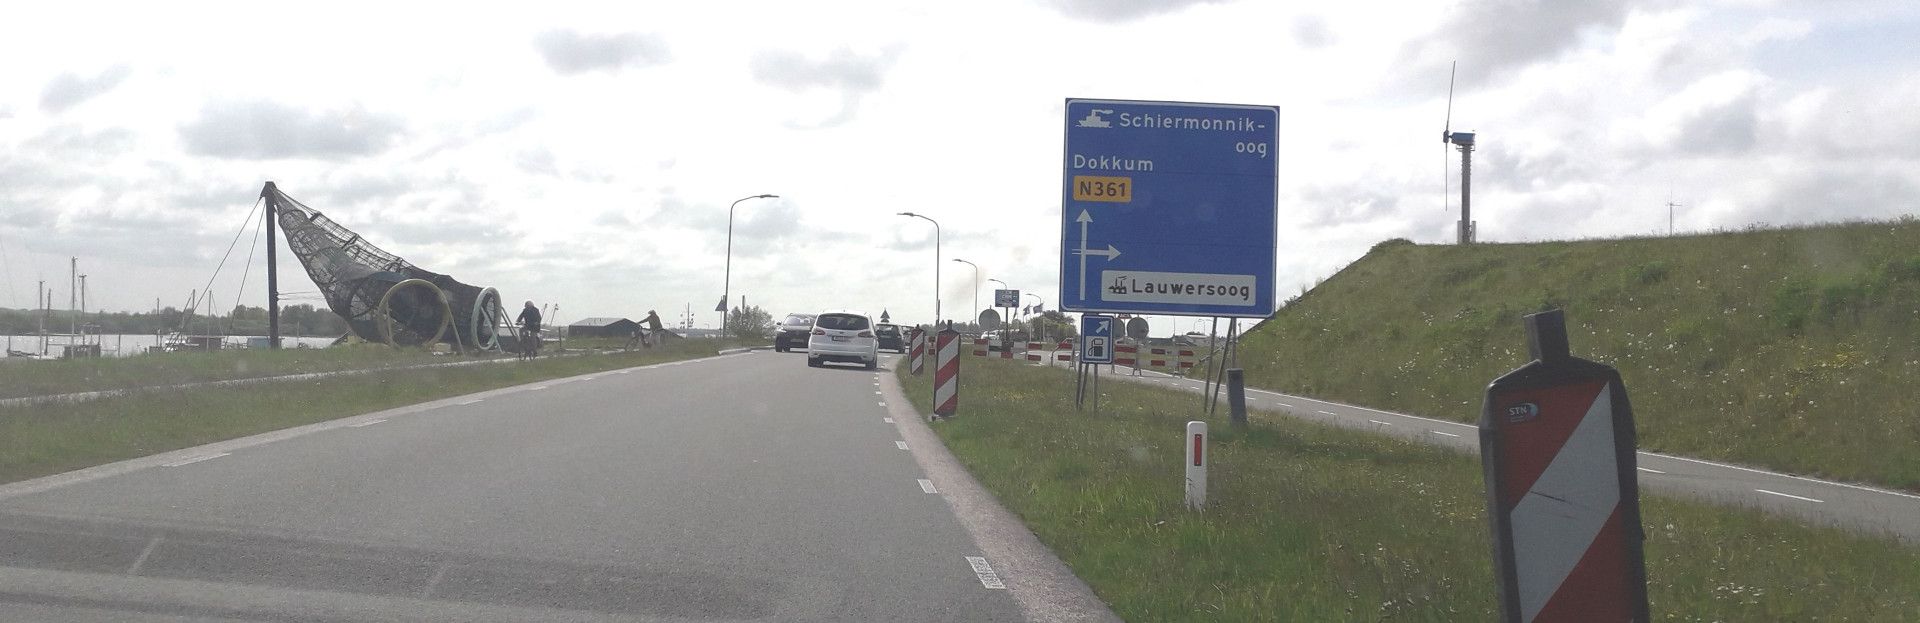 Straßenbauarbeiten auf dem Weg zum Fährhafen Lauwersoog (Schiermonnikoog)